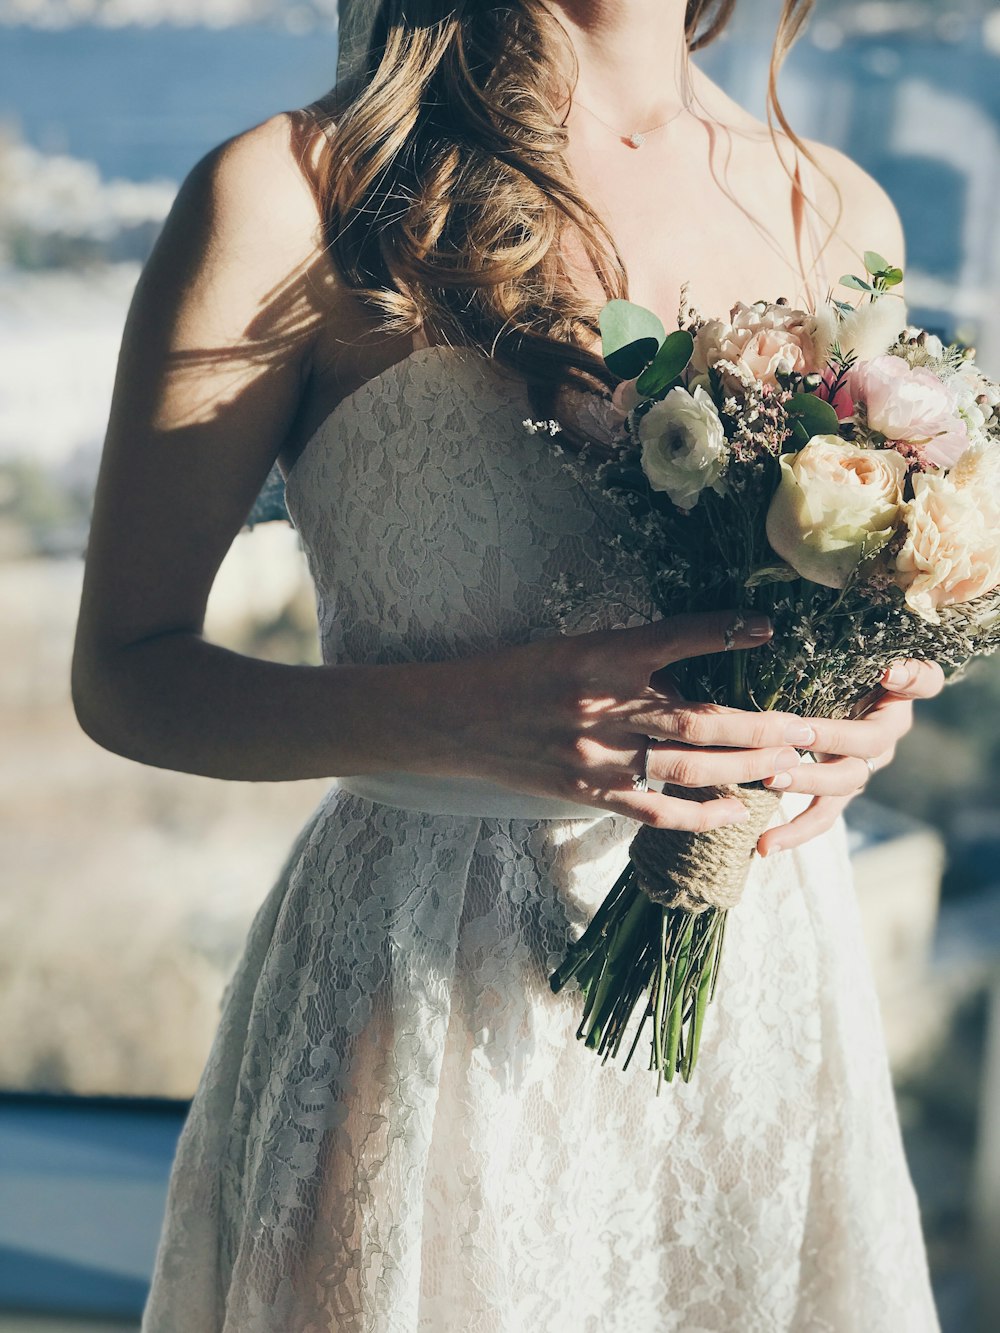 Femme en robe bustier fleurie blanche tenant des fleurs